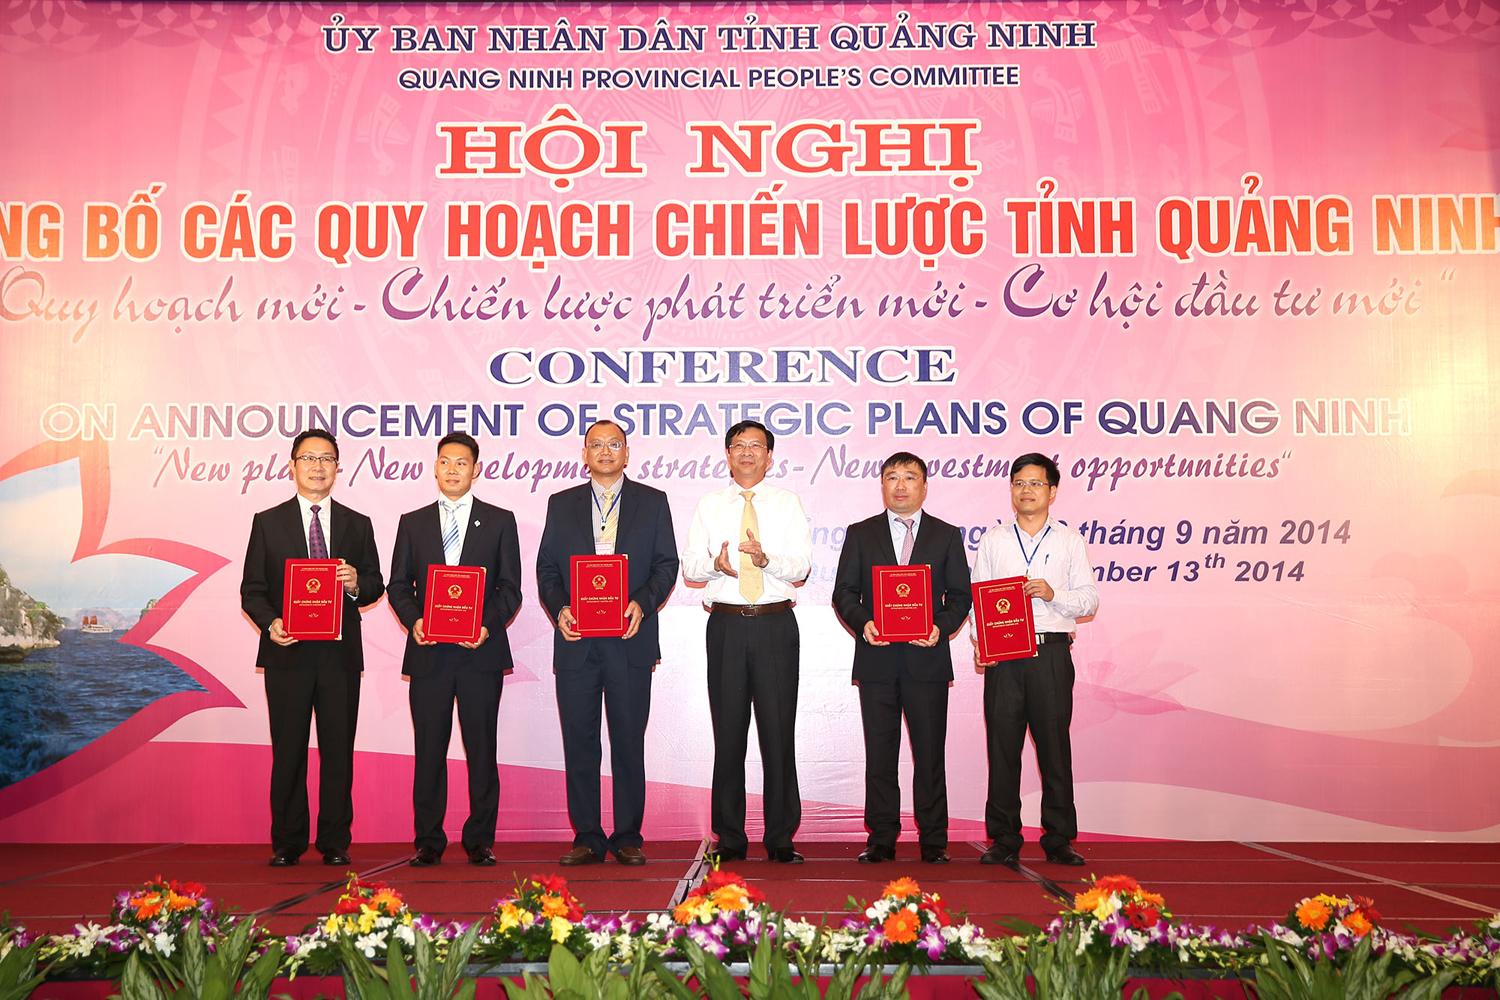 Chủ tịch UBND tỉnh Nguyễn Văn Đọc trao giấy chứng nhận đầu tư cho các nhà đầu tư tại Hội nghị Công bố các quy hoạch chiến lược tỉnh Quảng Ninh (tháng 9/2014).